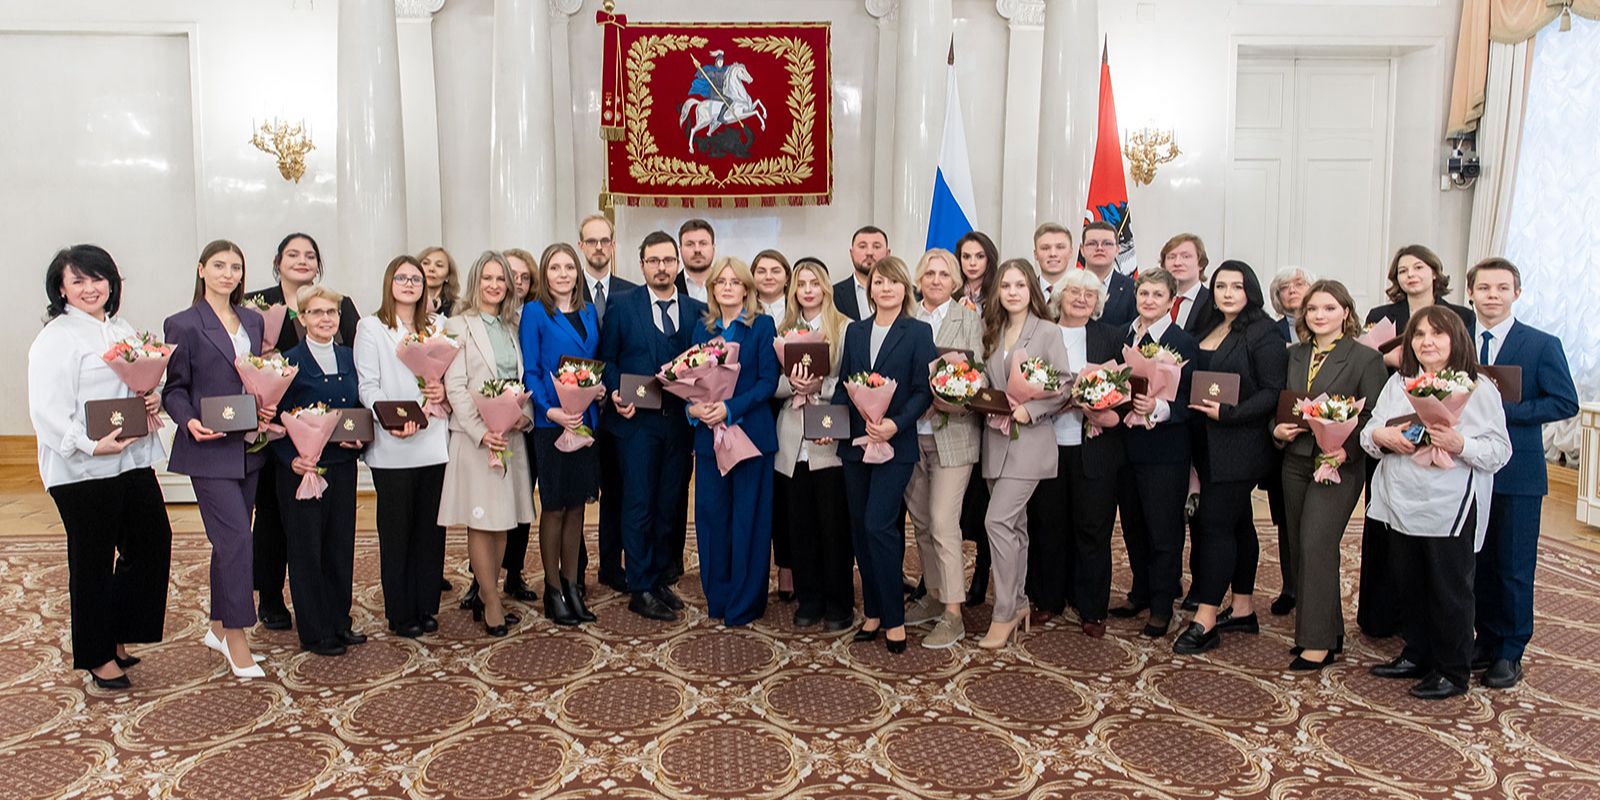 Знака отличия «Волонтер Москвы» удостоены 30 активных жителей столицы